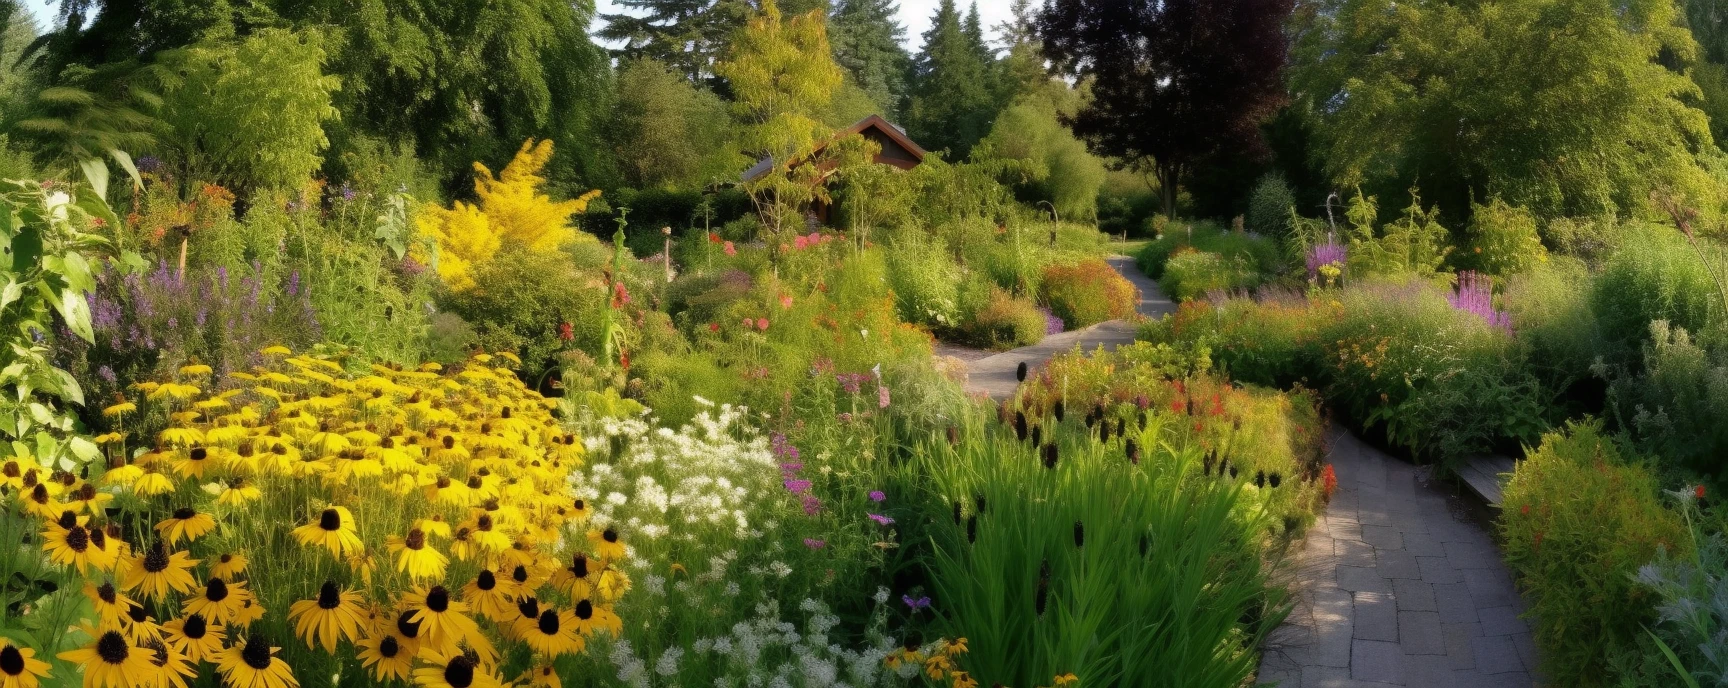 Guía de plantas nativas para tu jardín: Cómo embellecer tu jardín y ayudar al medio ambiente